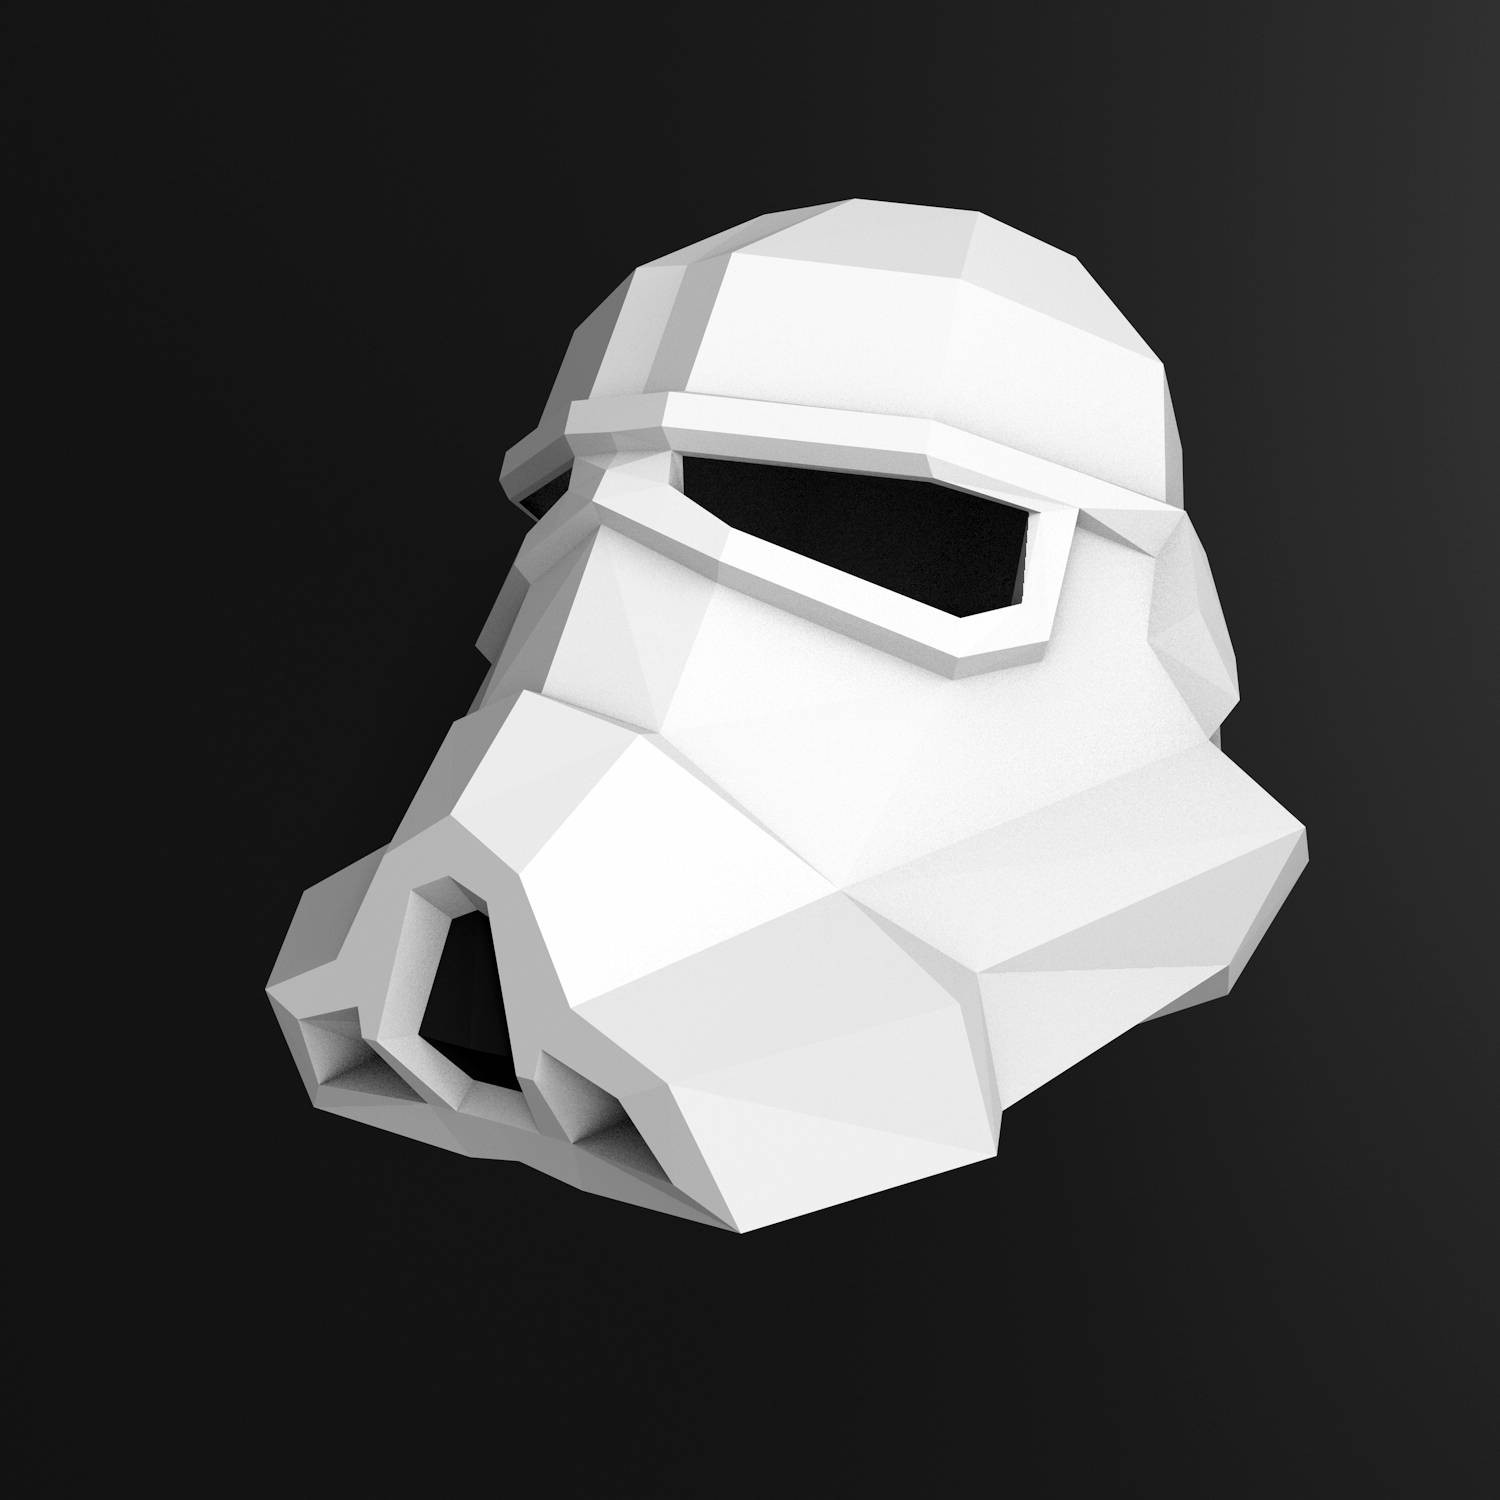 Stormtrooper Papercraft Helmet Diy Stormtrooper Mask Papercraft Stormtrooper Mask Star